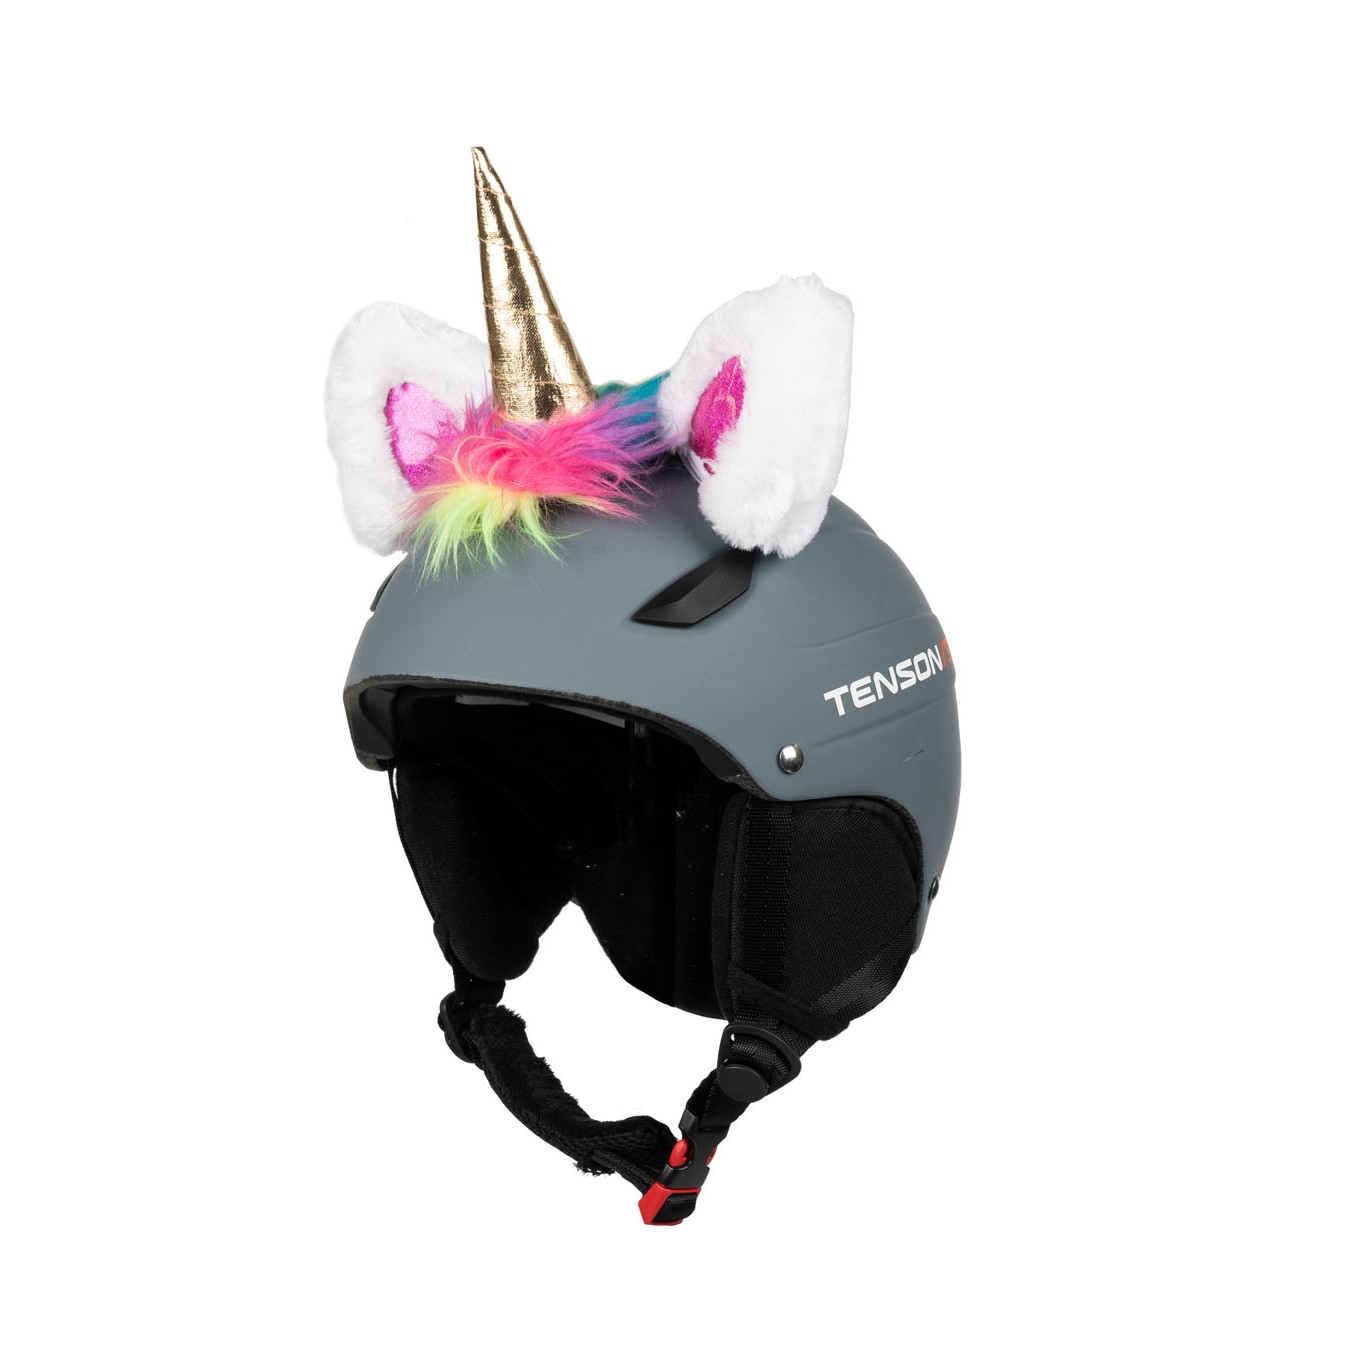 Crazy Ears, accessorio per caschi, orecchie di animali per casco